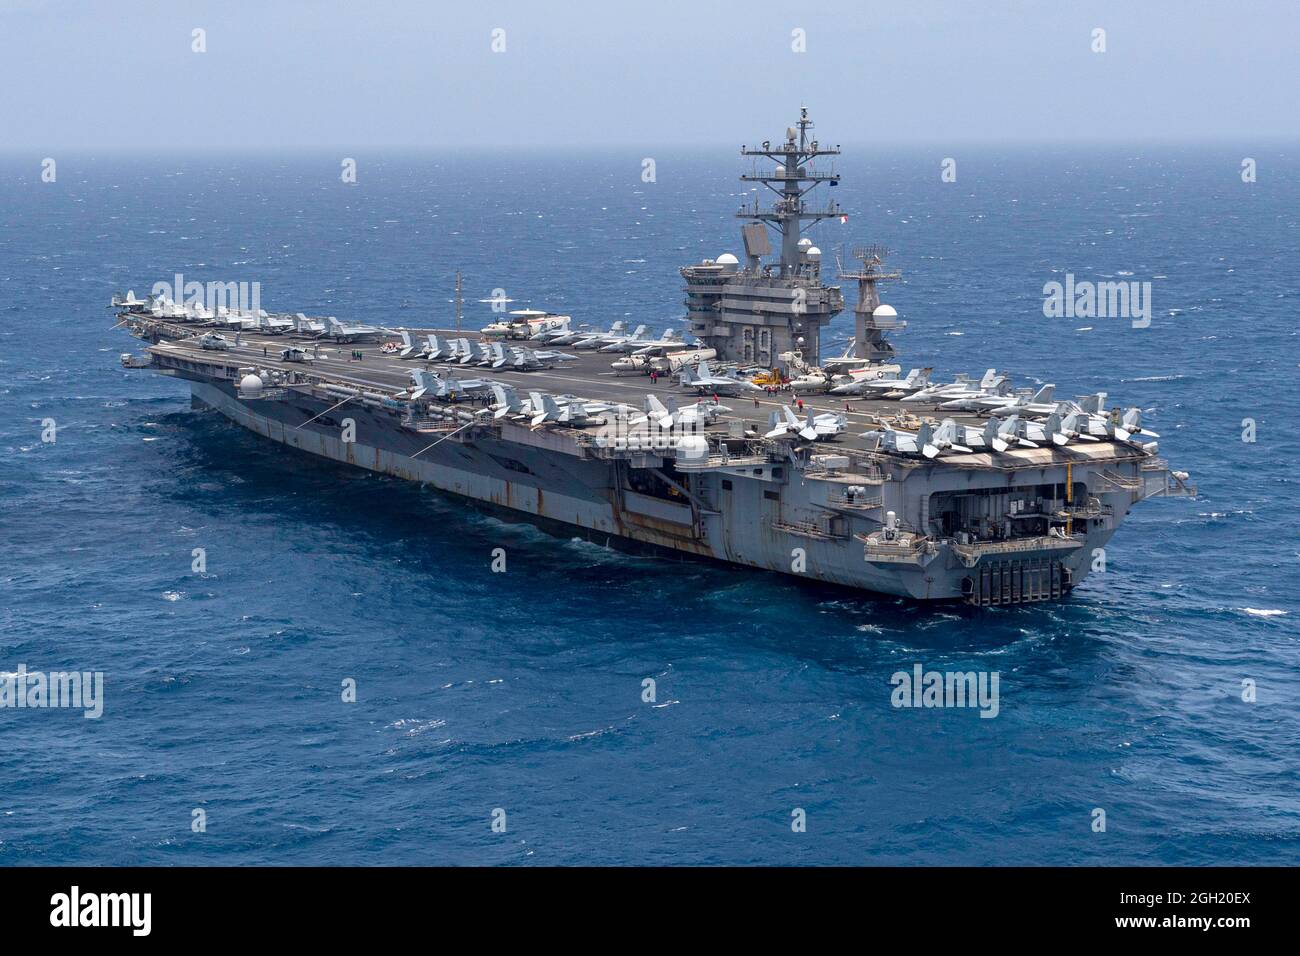 ARABISCHES MEER (12. Juni 2020) der Flugzeugträger USS Dwight D. Eisenhower (CVN 69) durchfliegt das Arabische Meer, 12 2020. Juni. IKE wird in den USA eingesetzt Stockfoto